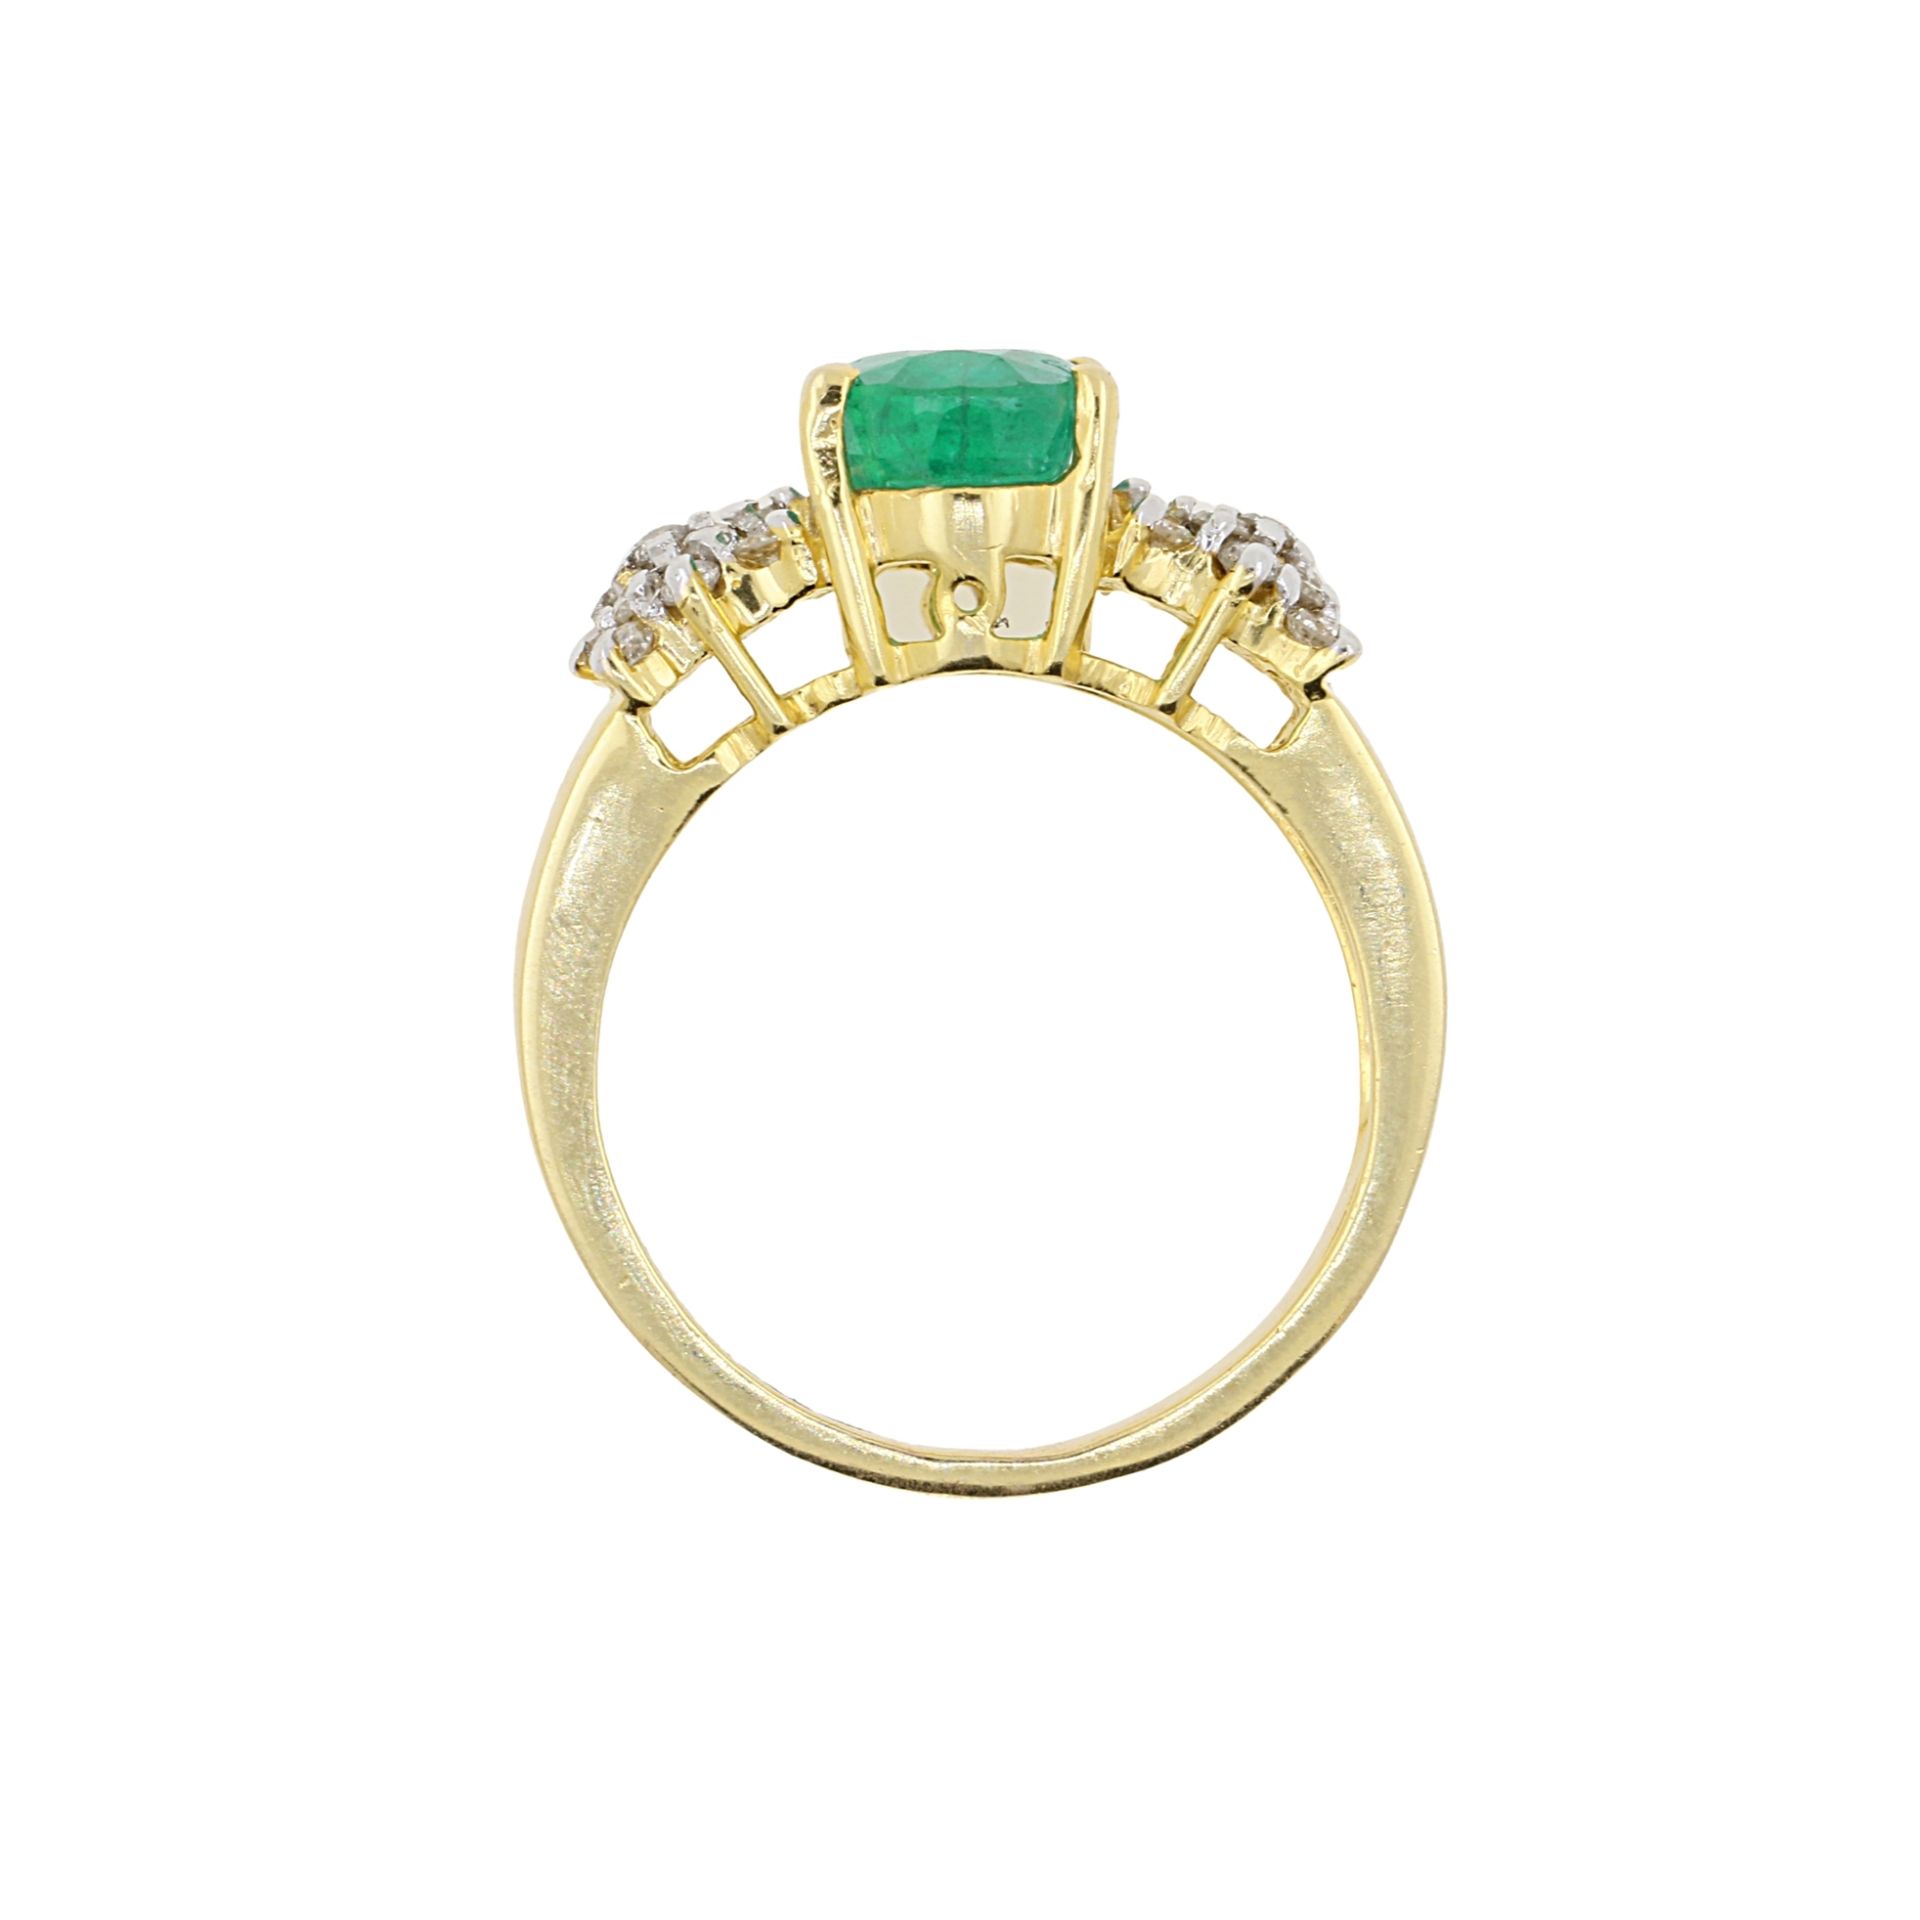 Smaragdring - 14 Kt-Gelbgold, zentraler ovaler Smaragd in Krappenfassung von 2,05ct, Ringschulter a - Image 2 of 6